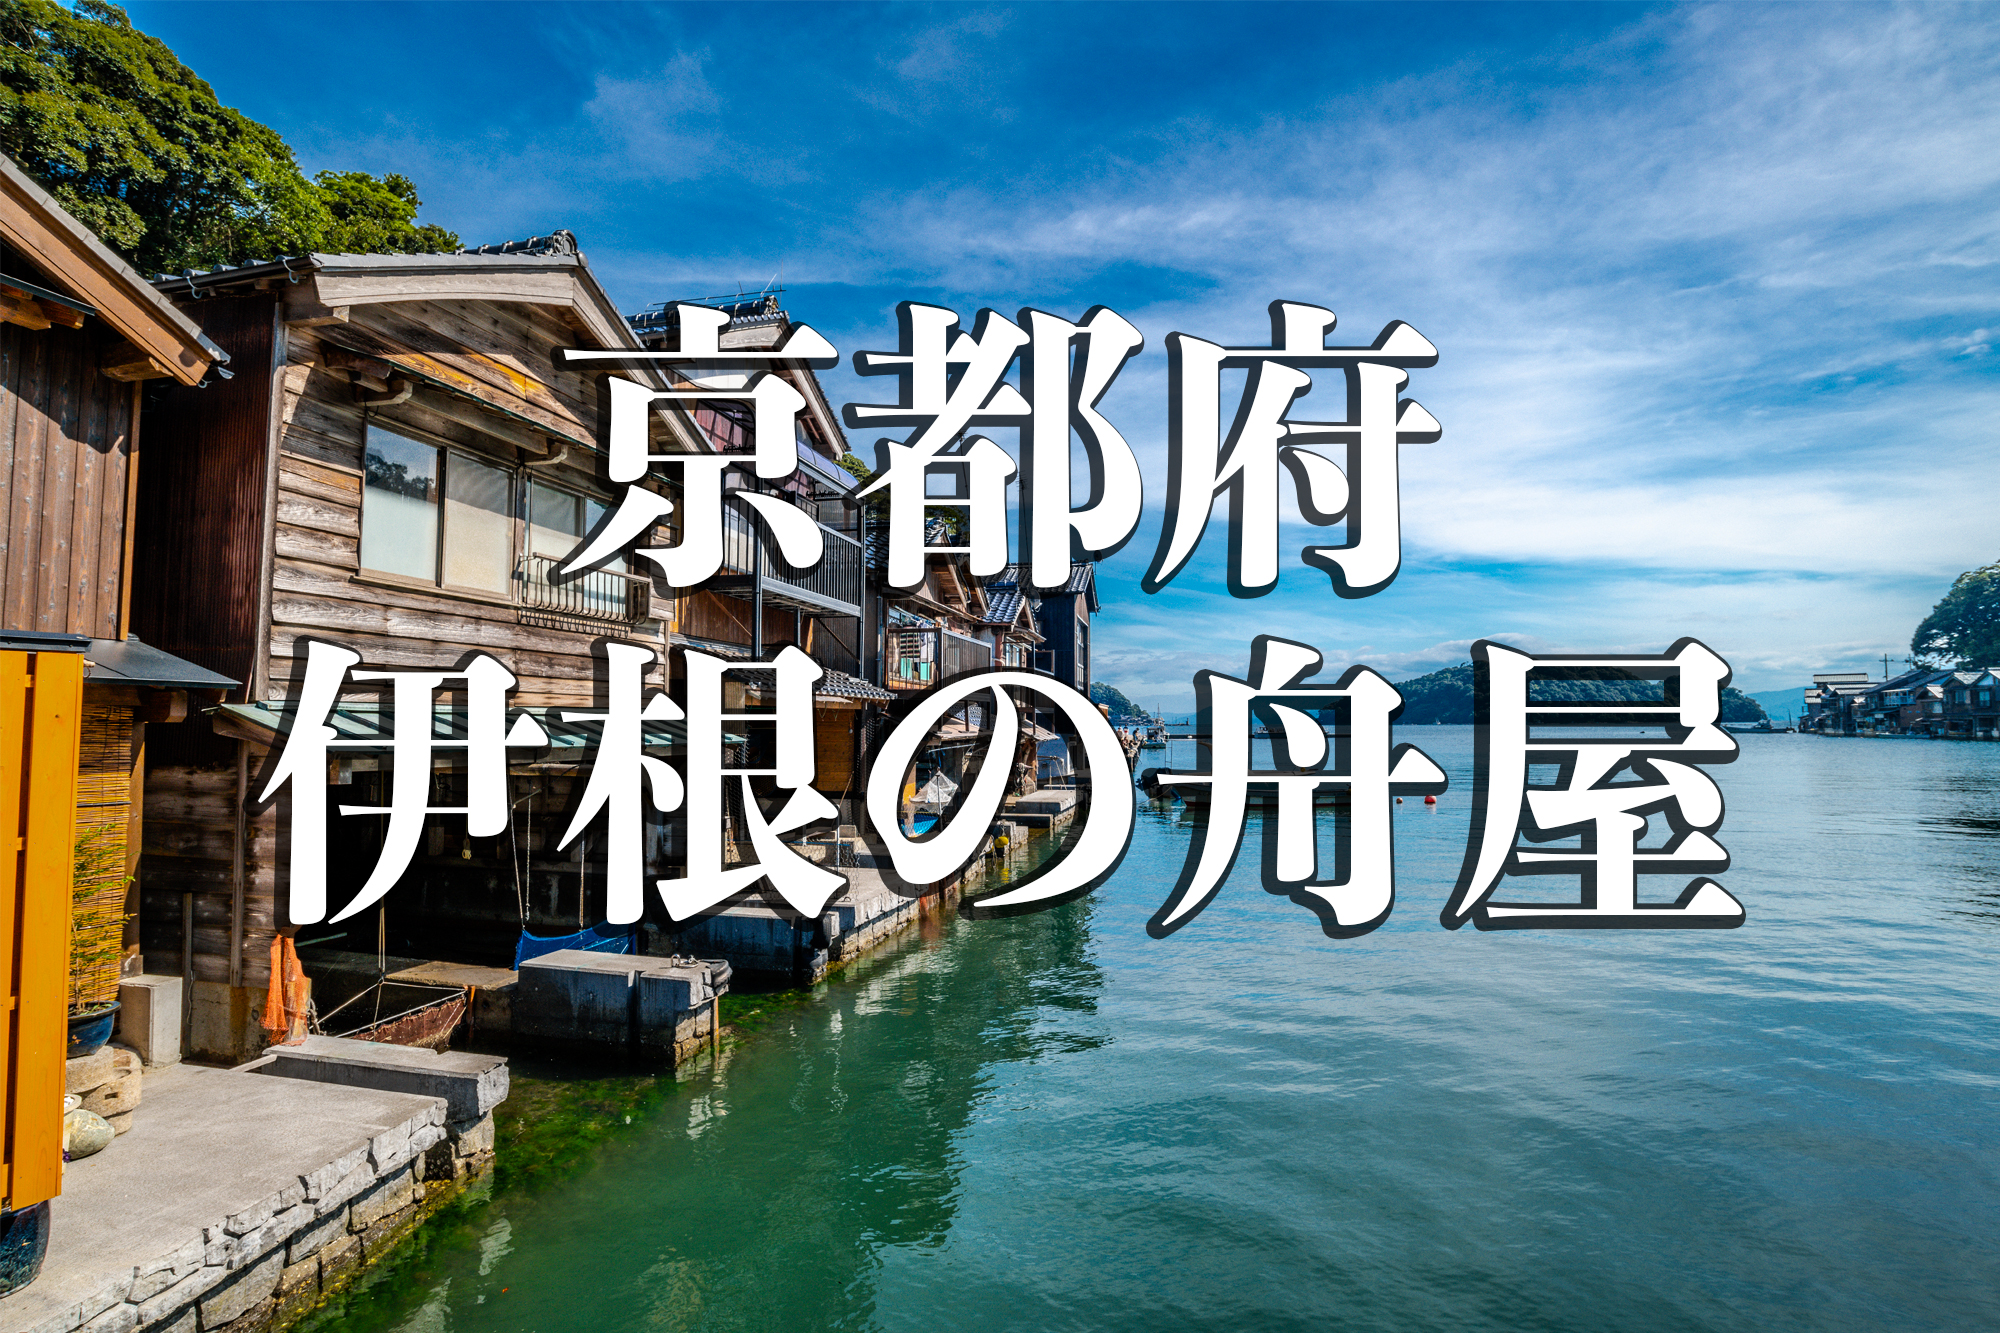 京都 伊根の舟屋 日本の原風景と懐かしさを感じる舟屋スポット 写真の紹介やアクセス情報など 写真や映像で紹介する関西 近畿の絶景カメラ 観光スポット